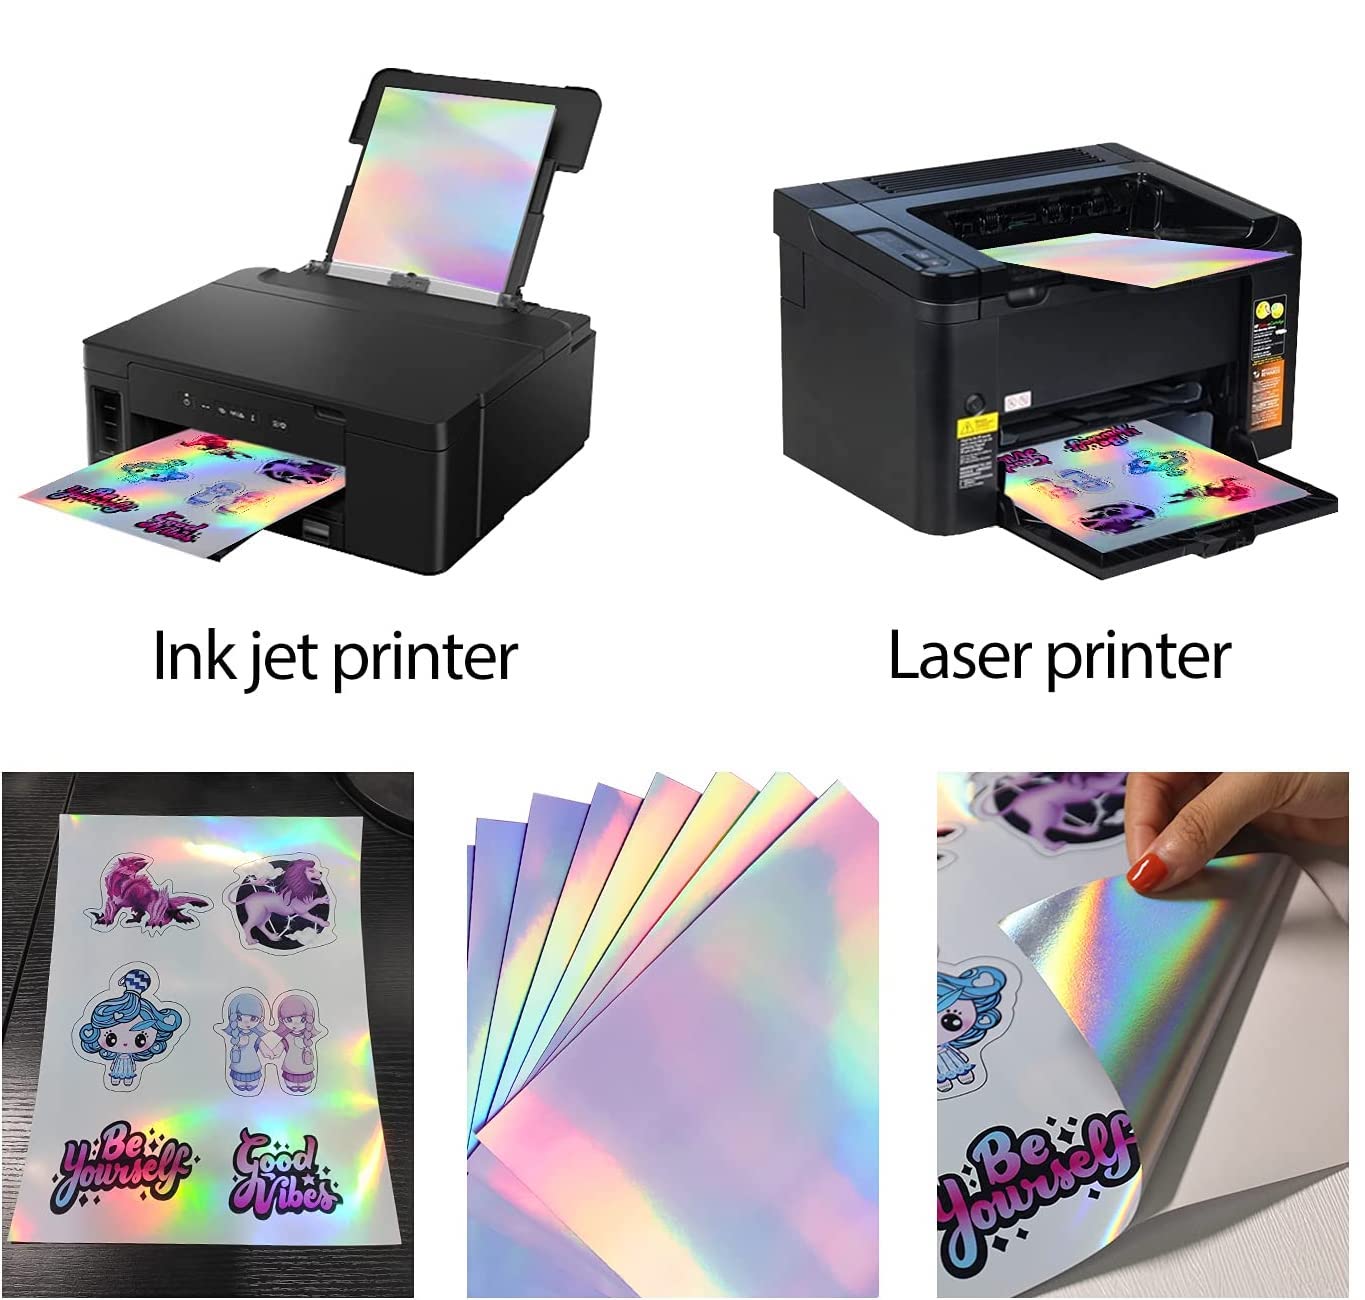 Vinil Textil Imprimible en impresora normal - Imprime en tu impresora  Inkjet - De venta en sublipalm 